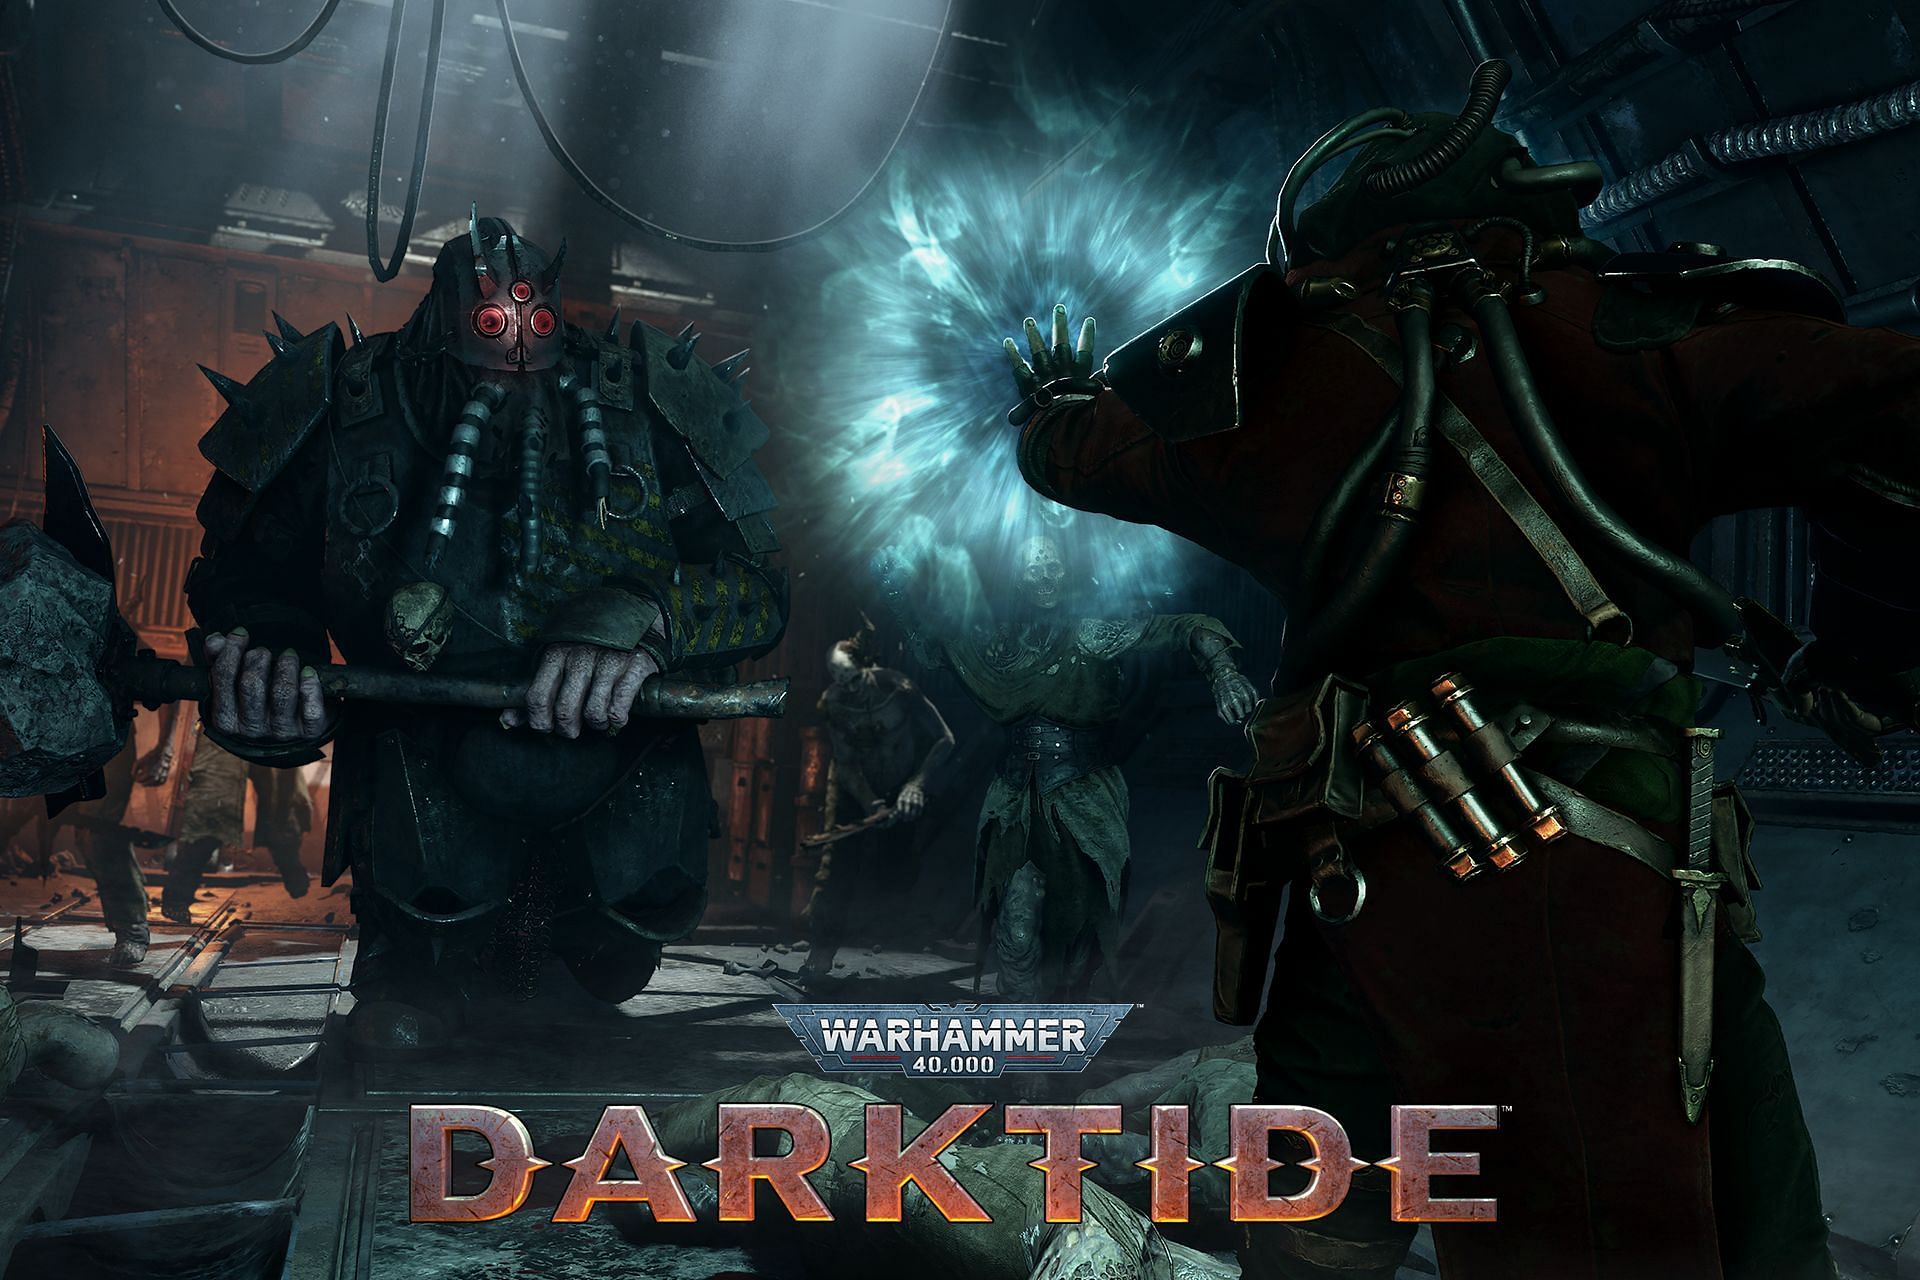 Warhammer 40,000: Darktide review (Image via Fatshark/Warhammer 40,000: Darktide)